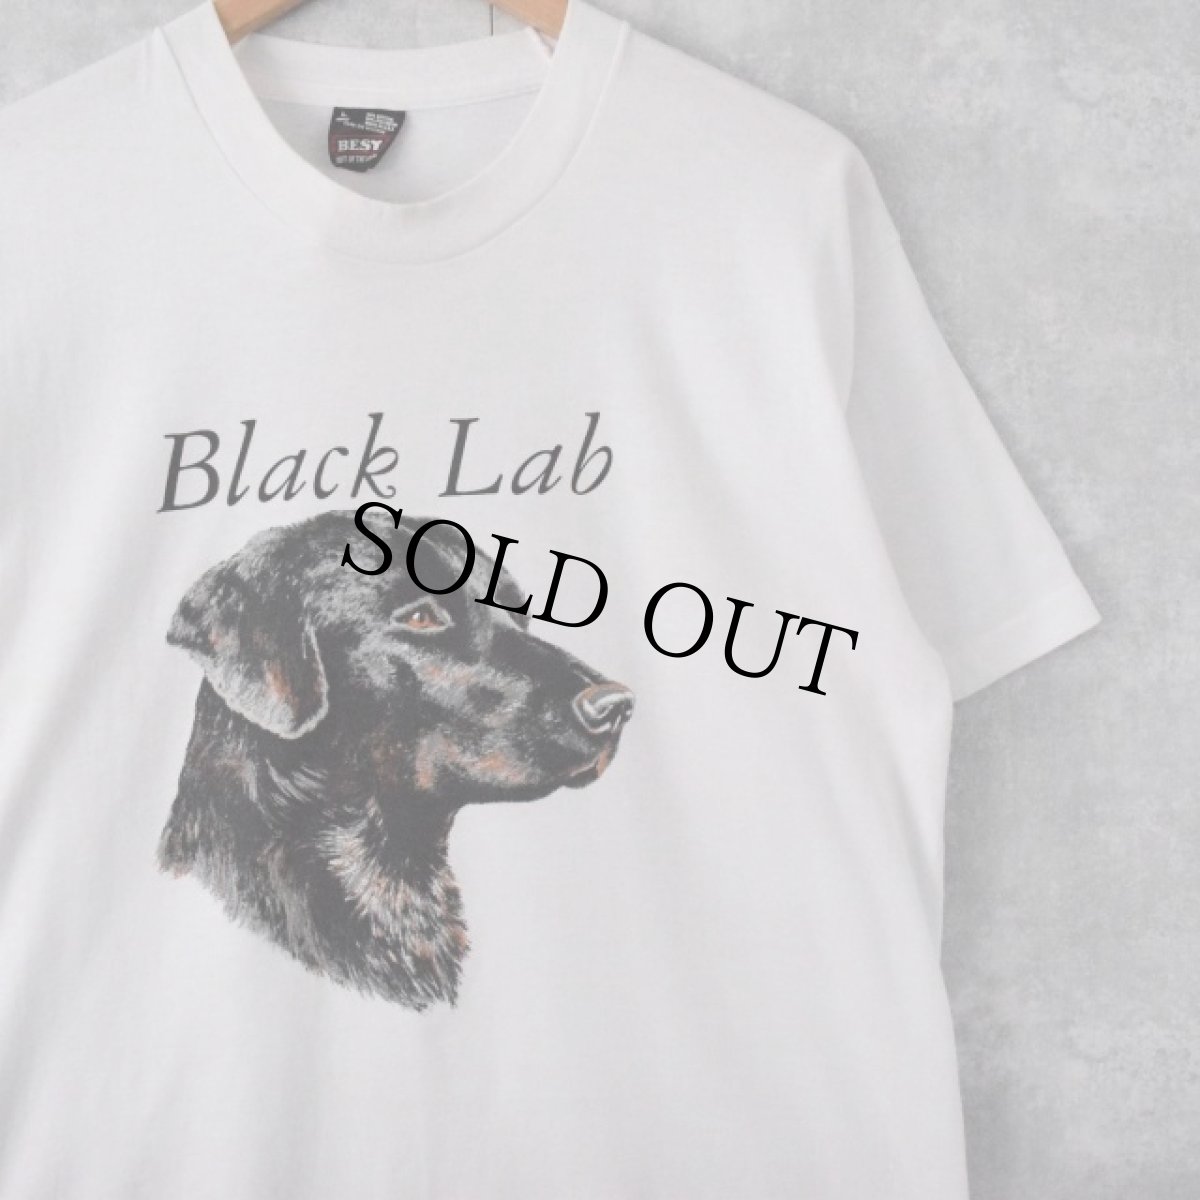 画像1: 90's USA製 "Black Lab" 犬プリントTシャツ L (1)